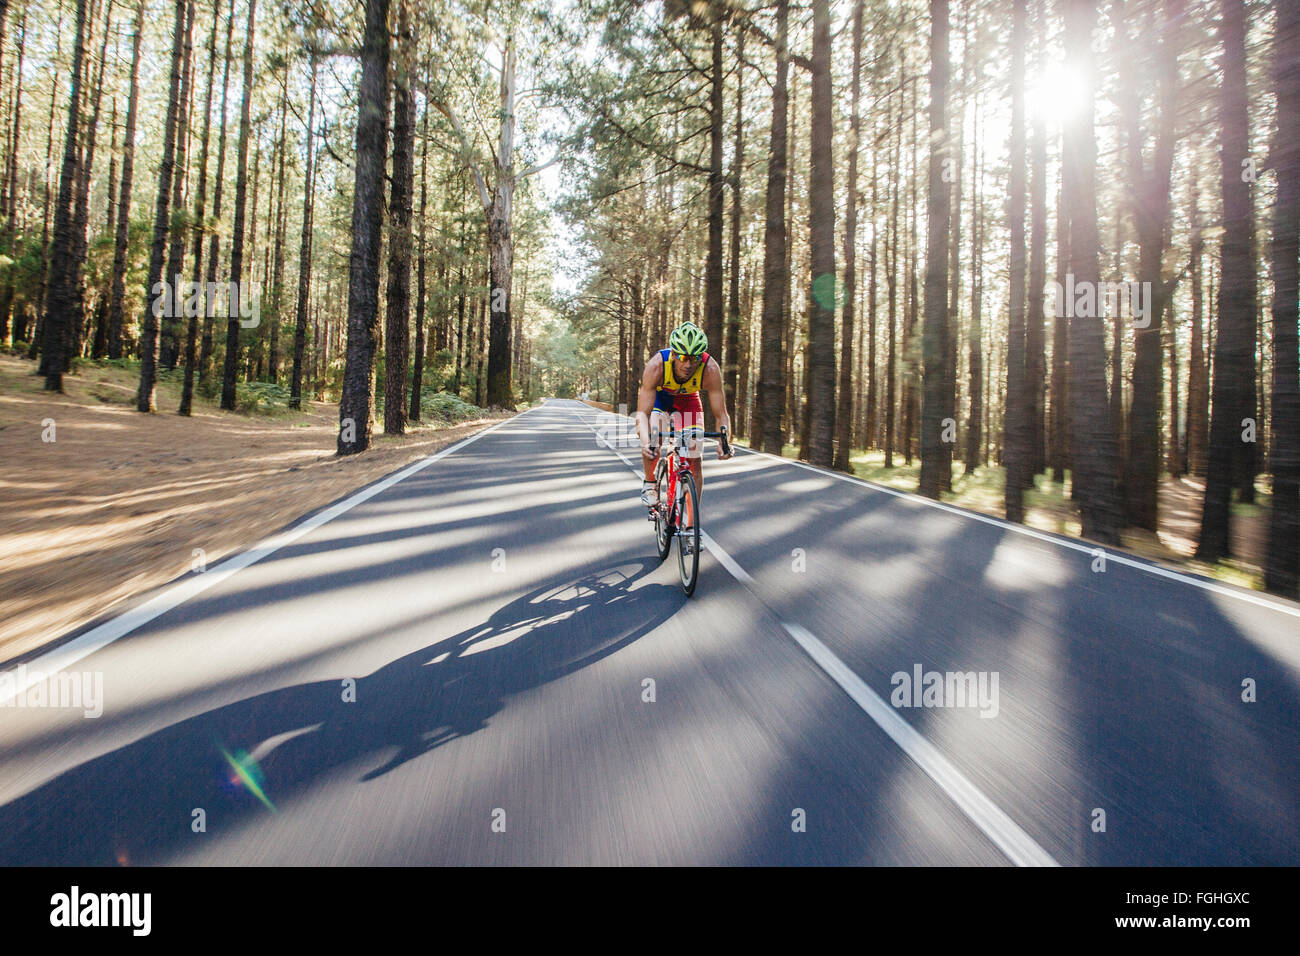 Ein Radfahrer fährt Rad auf einer Straße durch einen tiefen Pinienwald Stockfoto